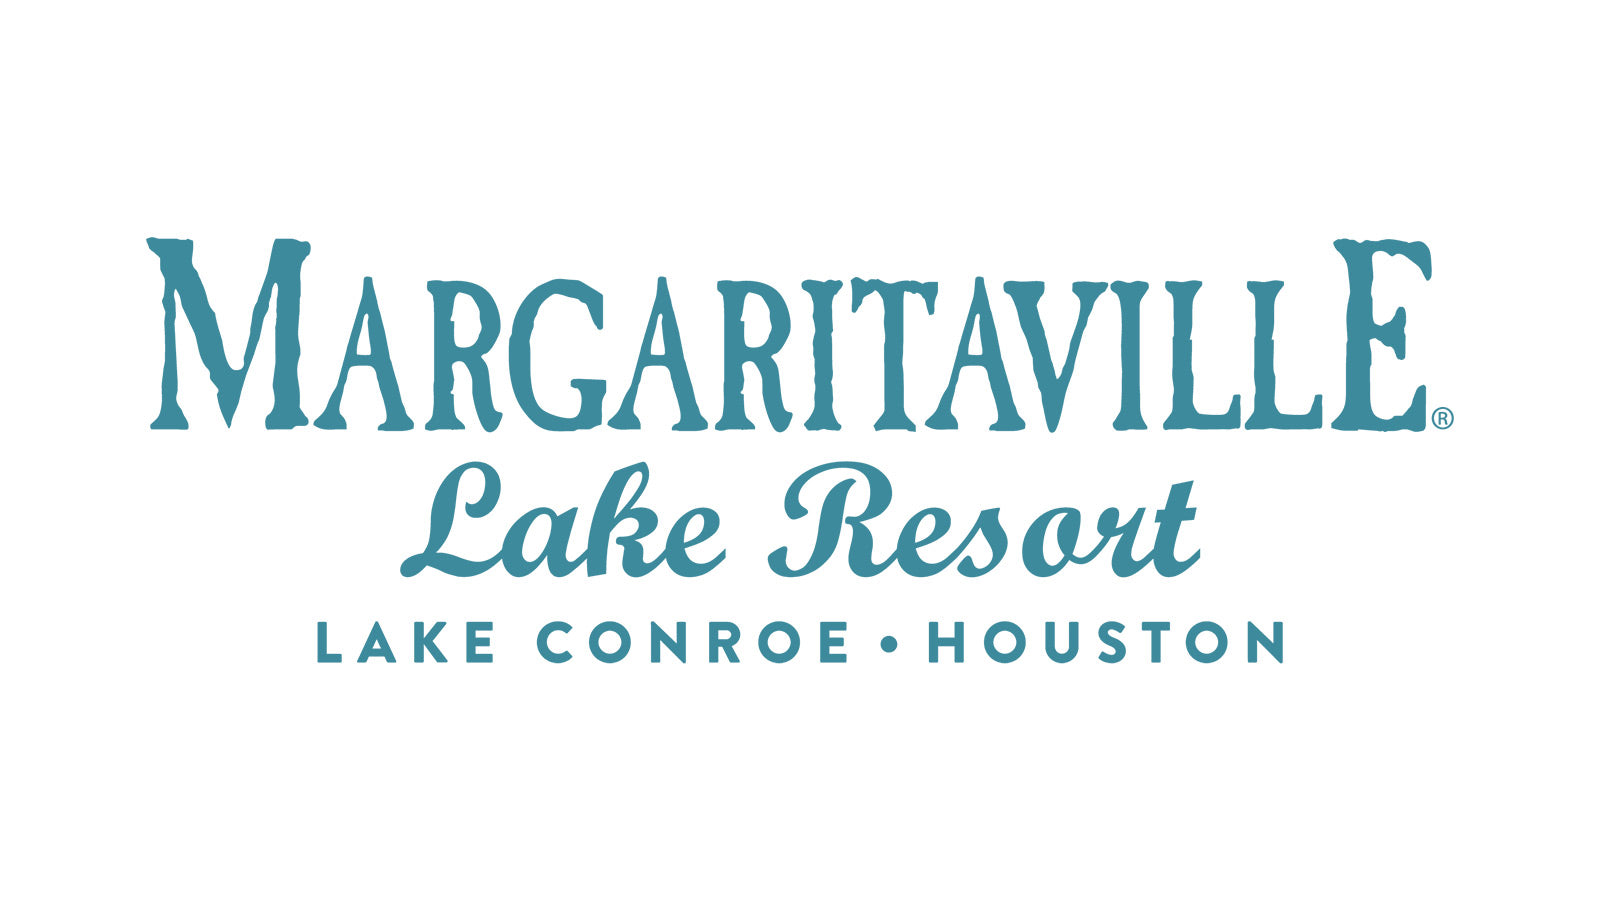 Margaritaville Lake Resort - Lake Conroe - Houston